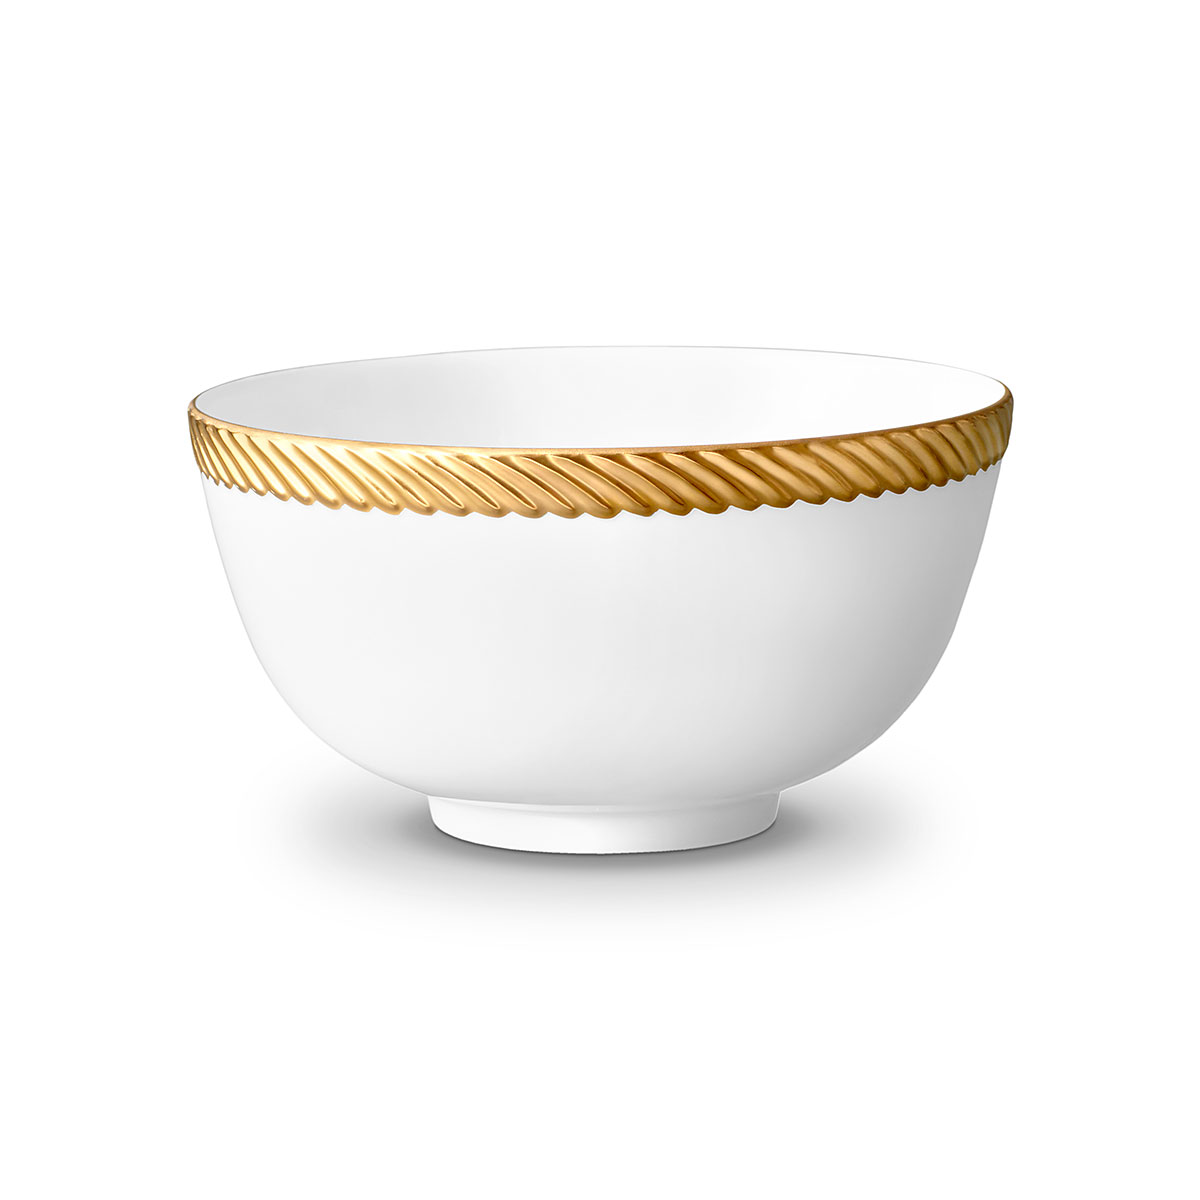 Lobjet I Corde Cereal Bowl Gold